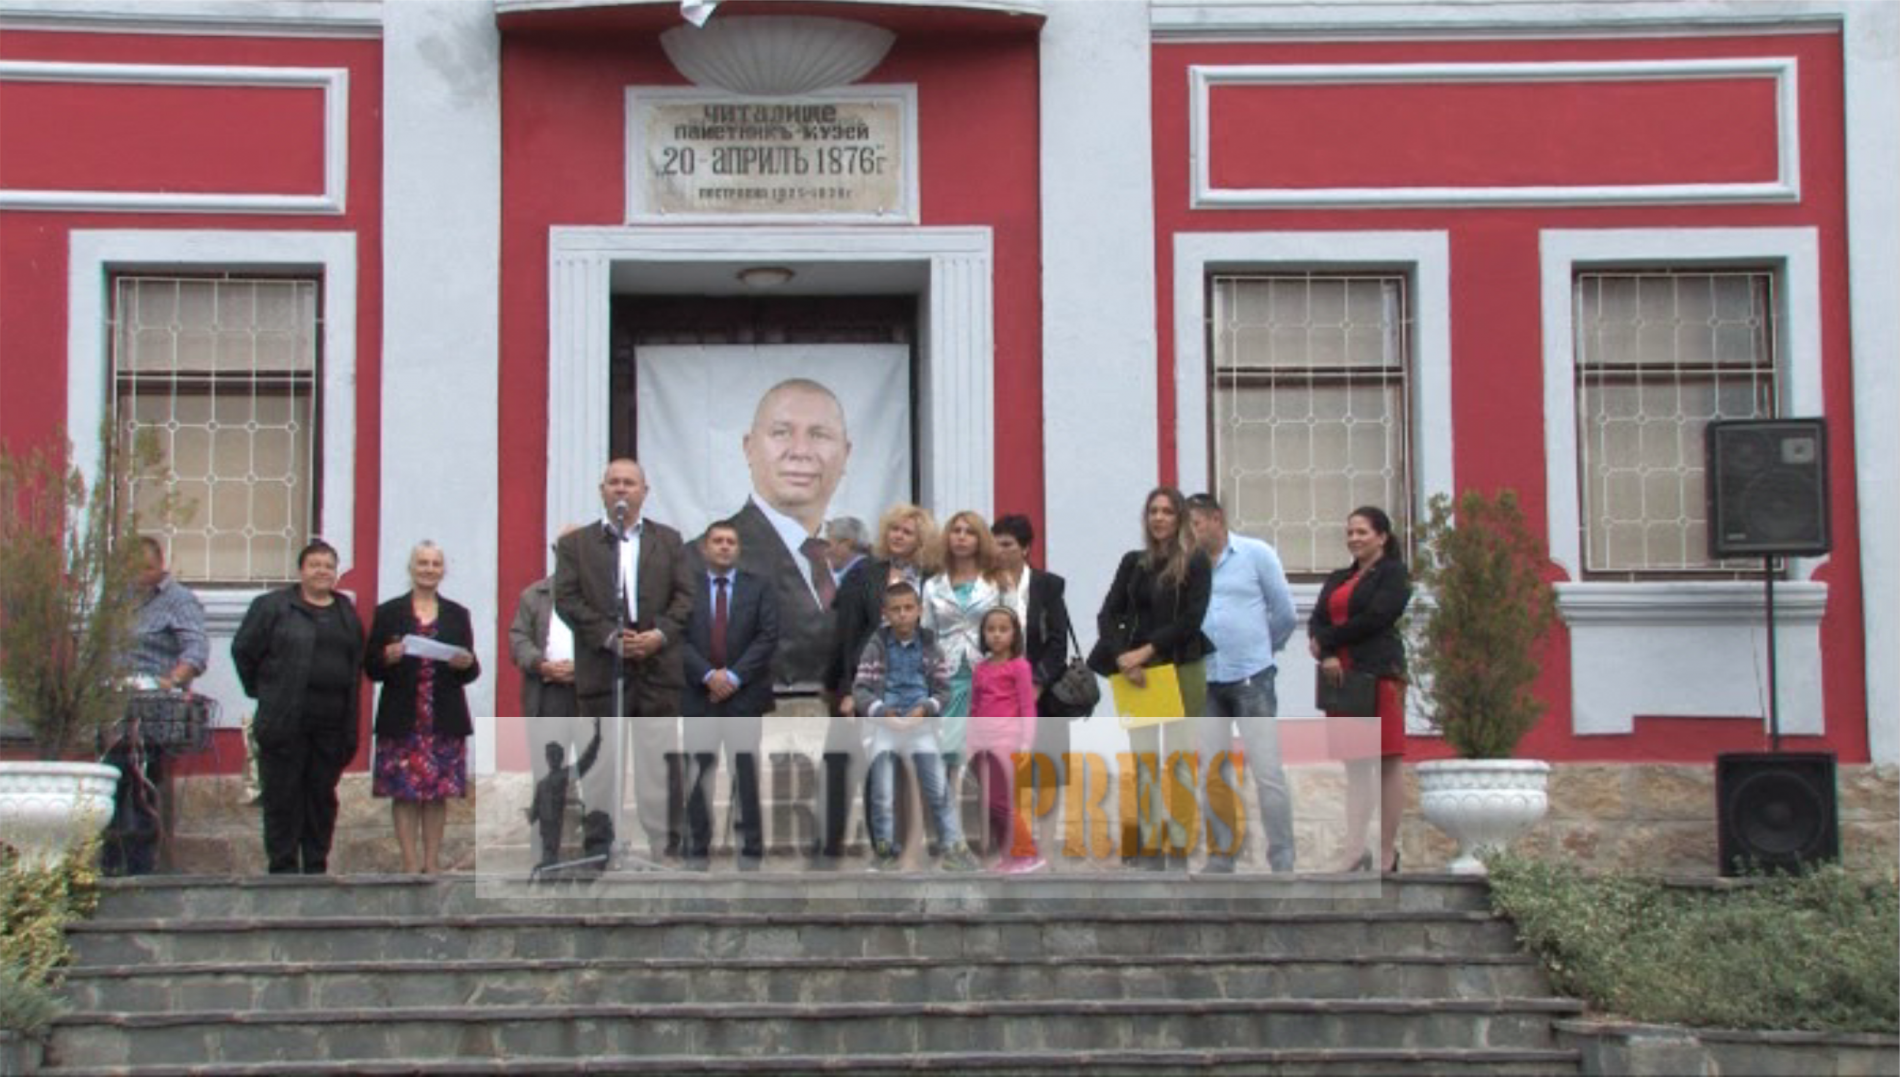 Бригаден генерал Димитър Шивиков откри официално предизборната си кампания в Клисура